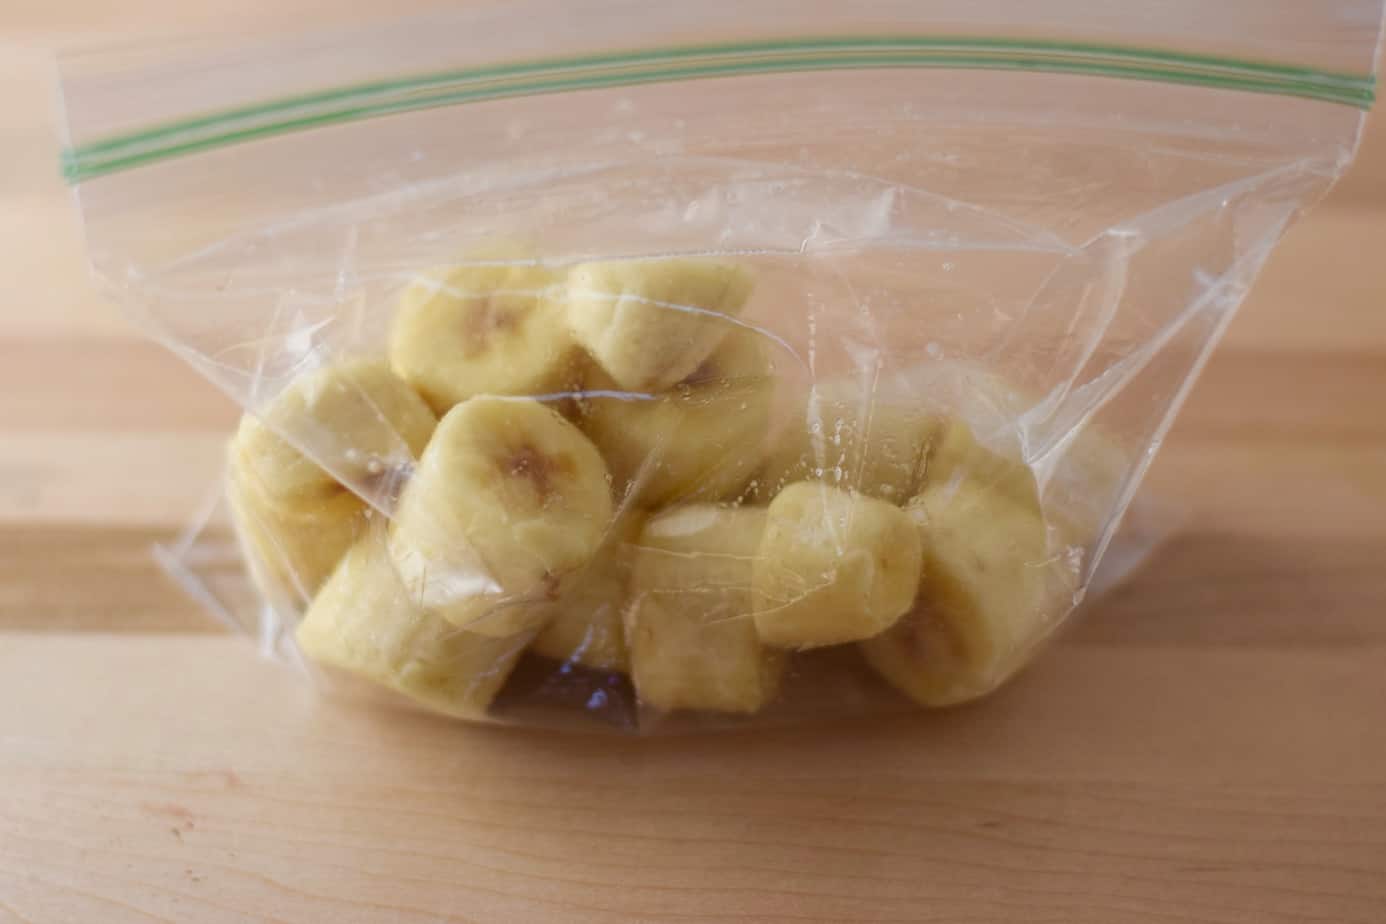 frozen sliced bananas in resealable plastic bag